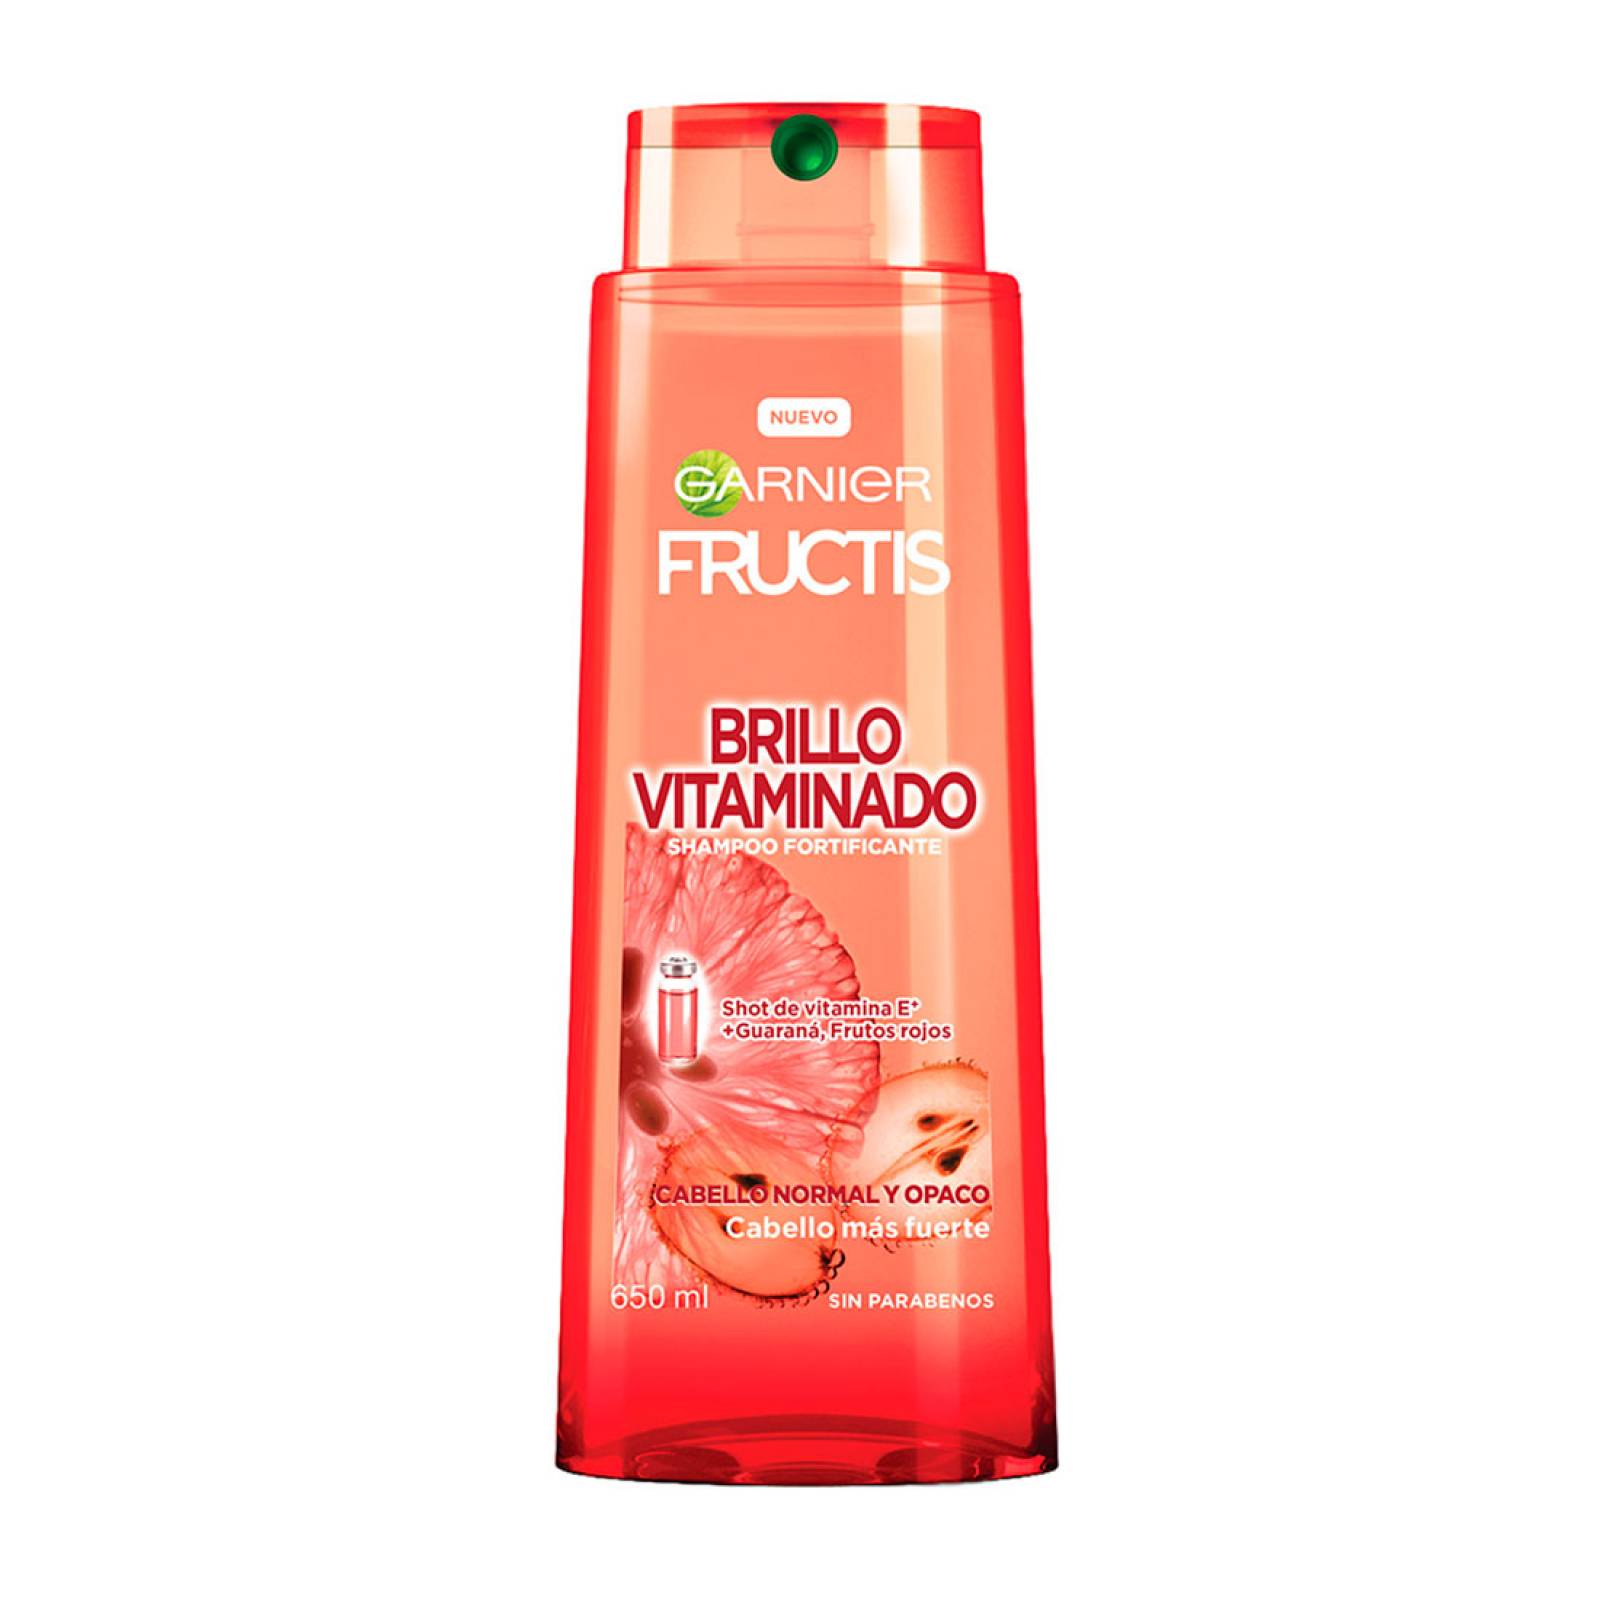 Fortalece Tu Cabello Con Shampoo 650 ml Fructis Garnier